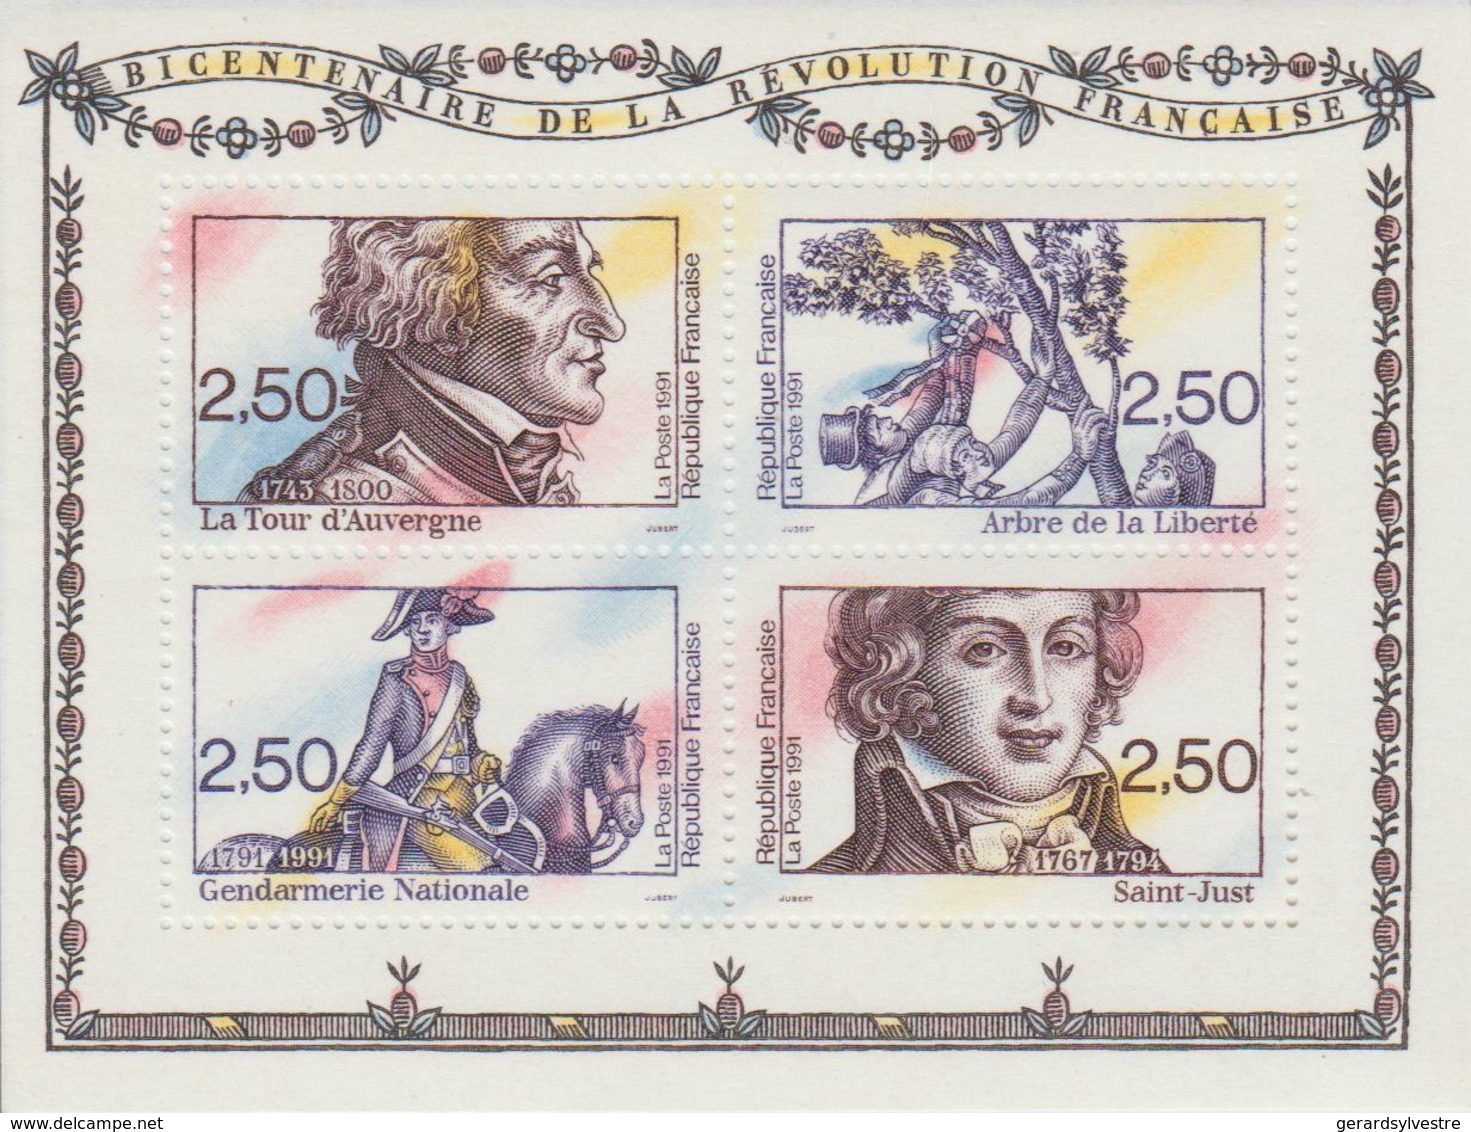 Bicentenaire De La Révolution Française - Mint/Hinged